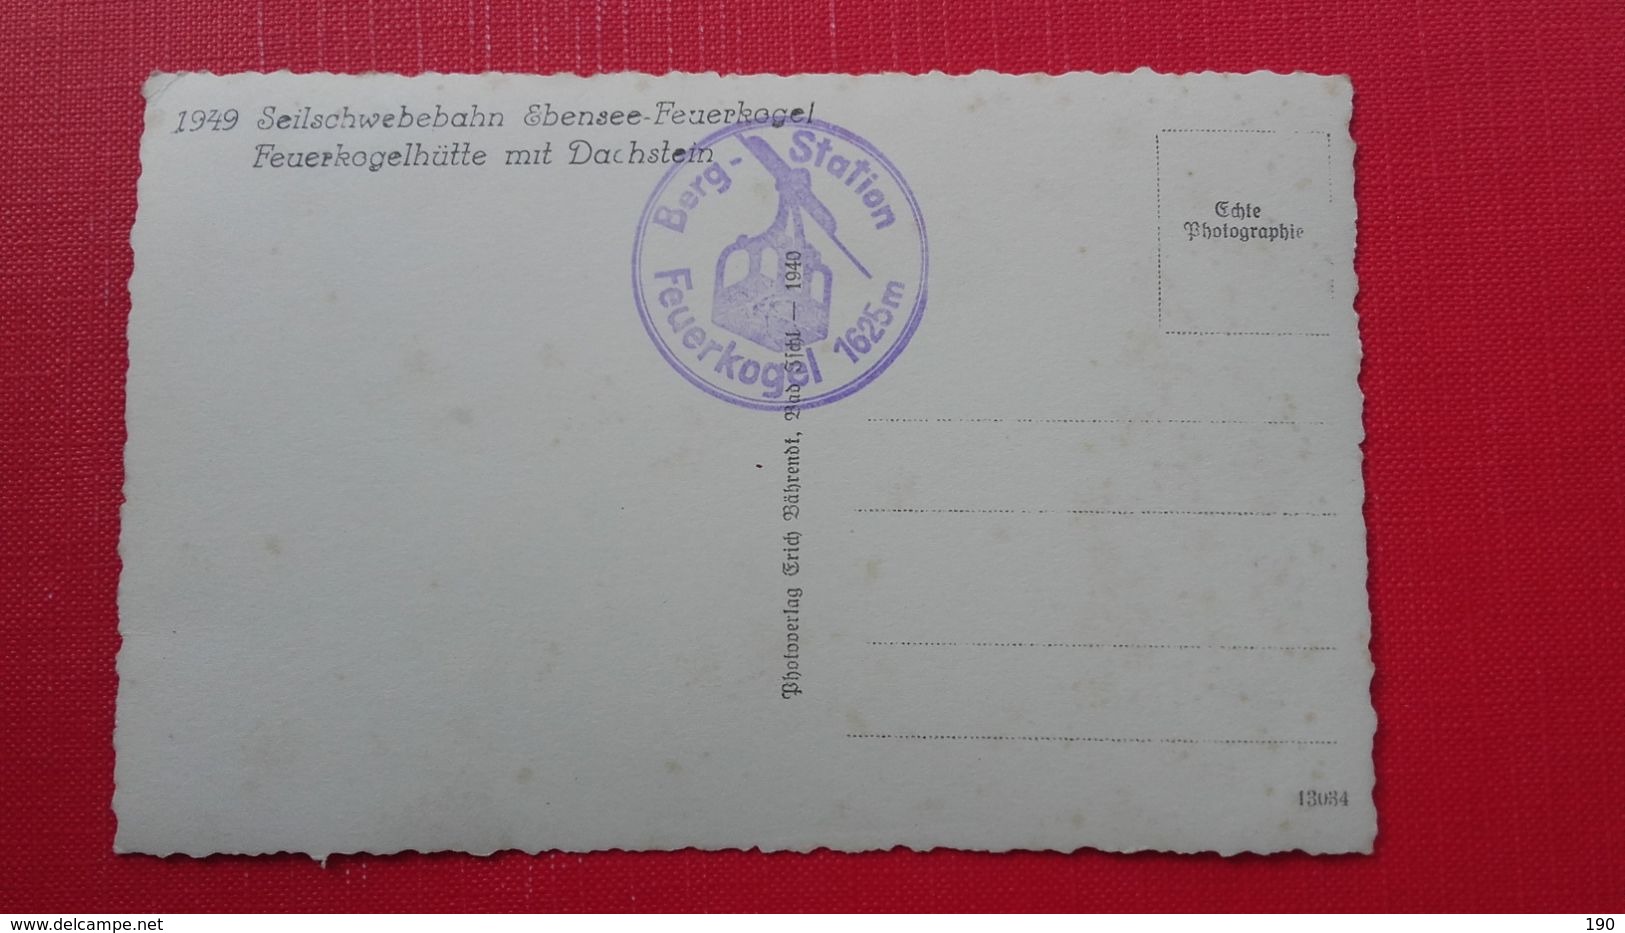 1949.Seilschwebebahn Ebense-Feuerkogel.Feuerkogelhutte Mit Dachstein-1940 - Ebensee